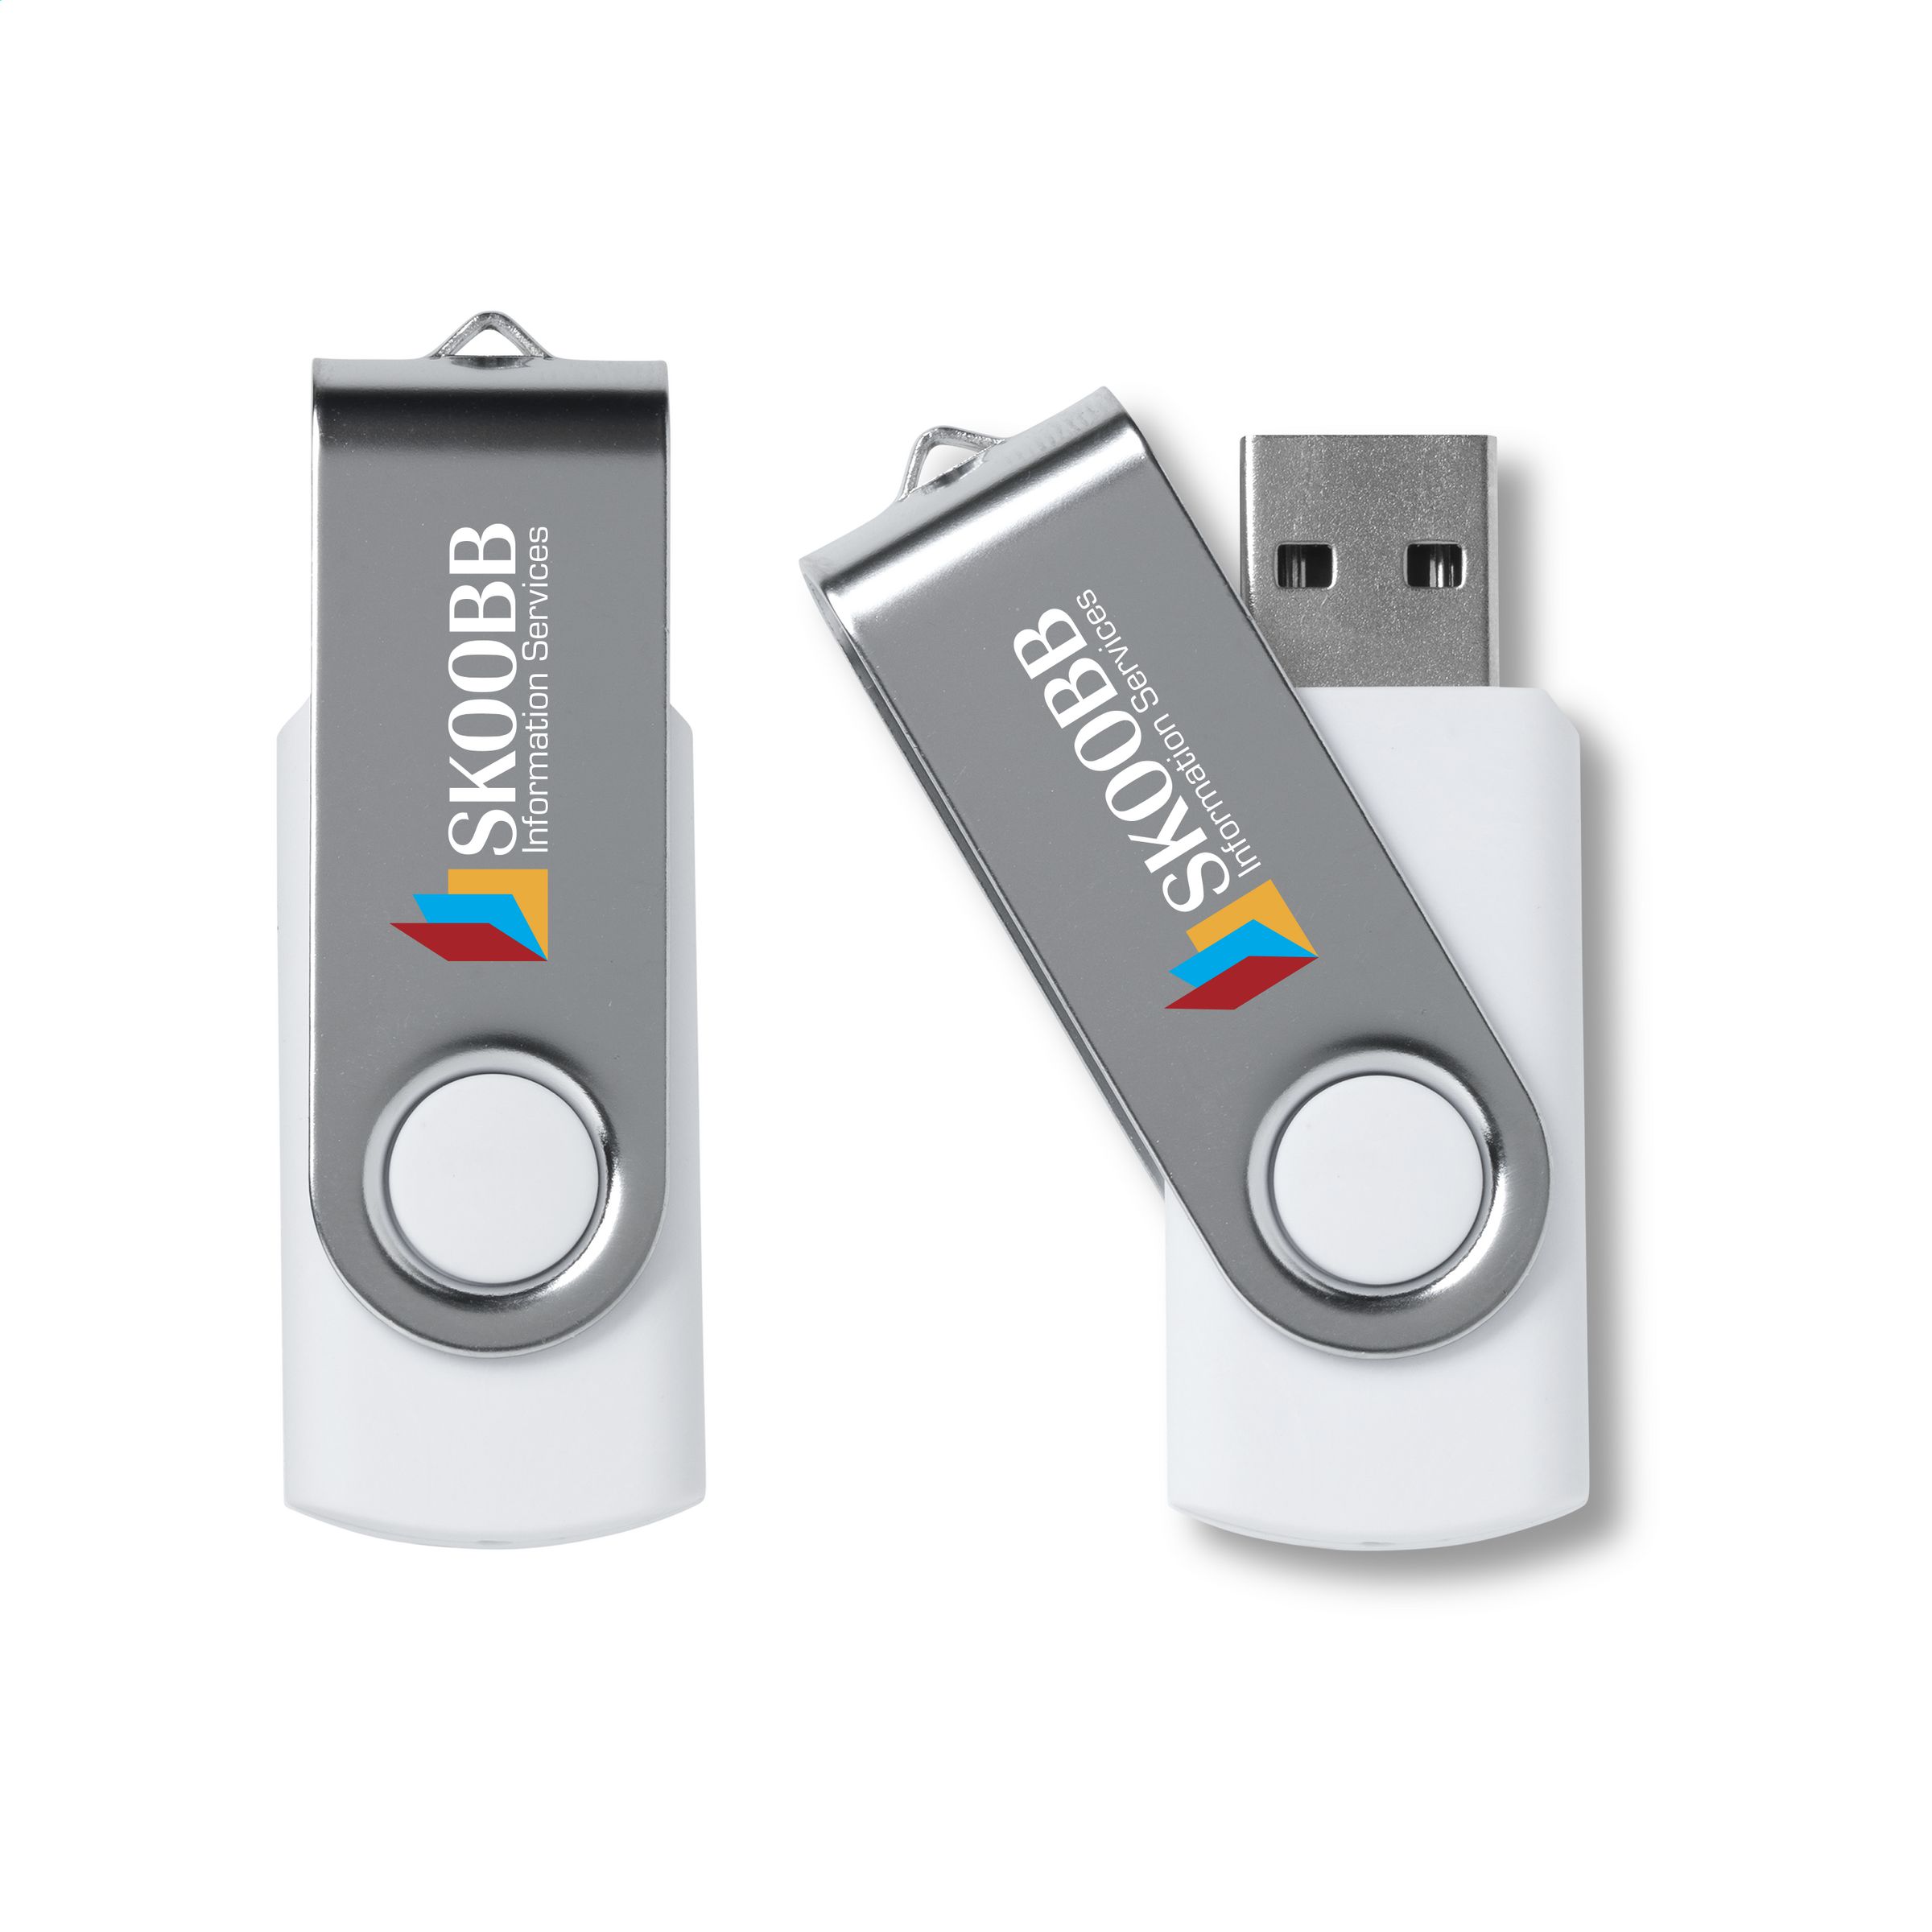 StorageMate USB 2.0 - Chaville